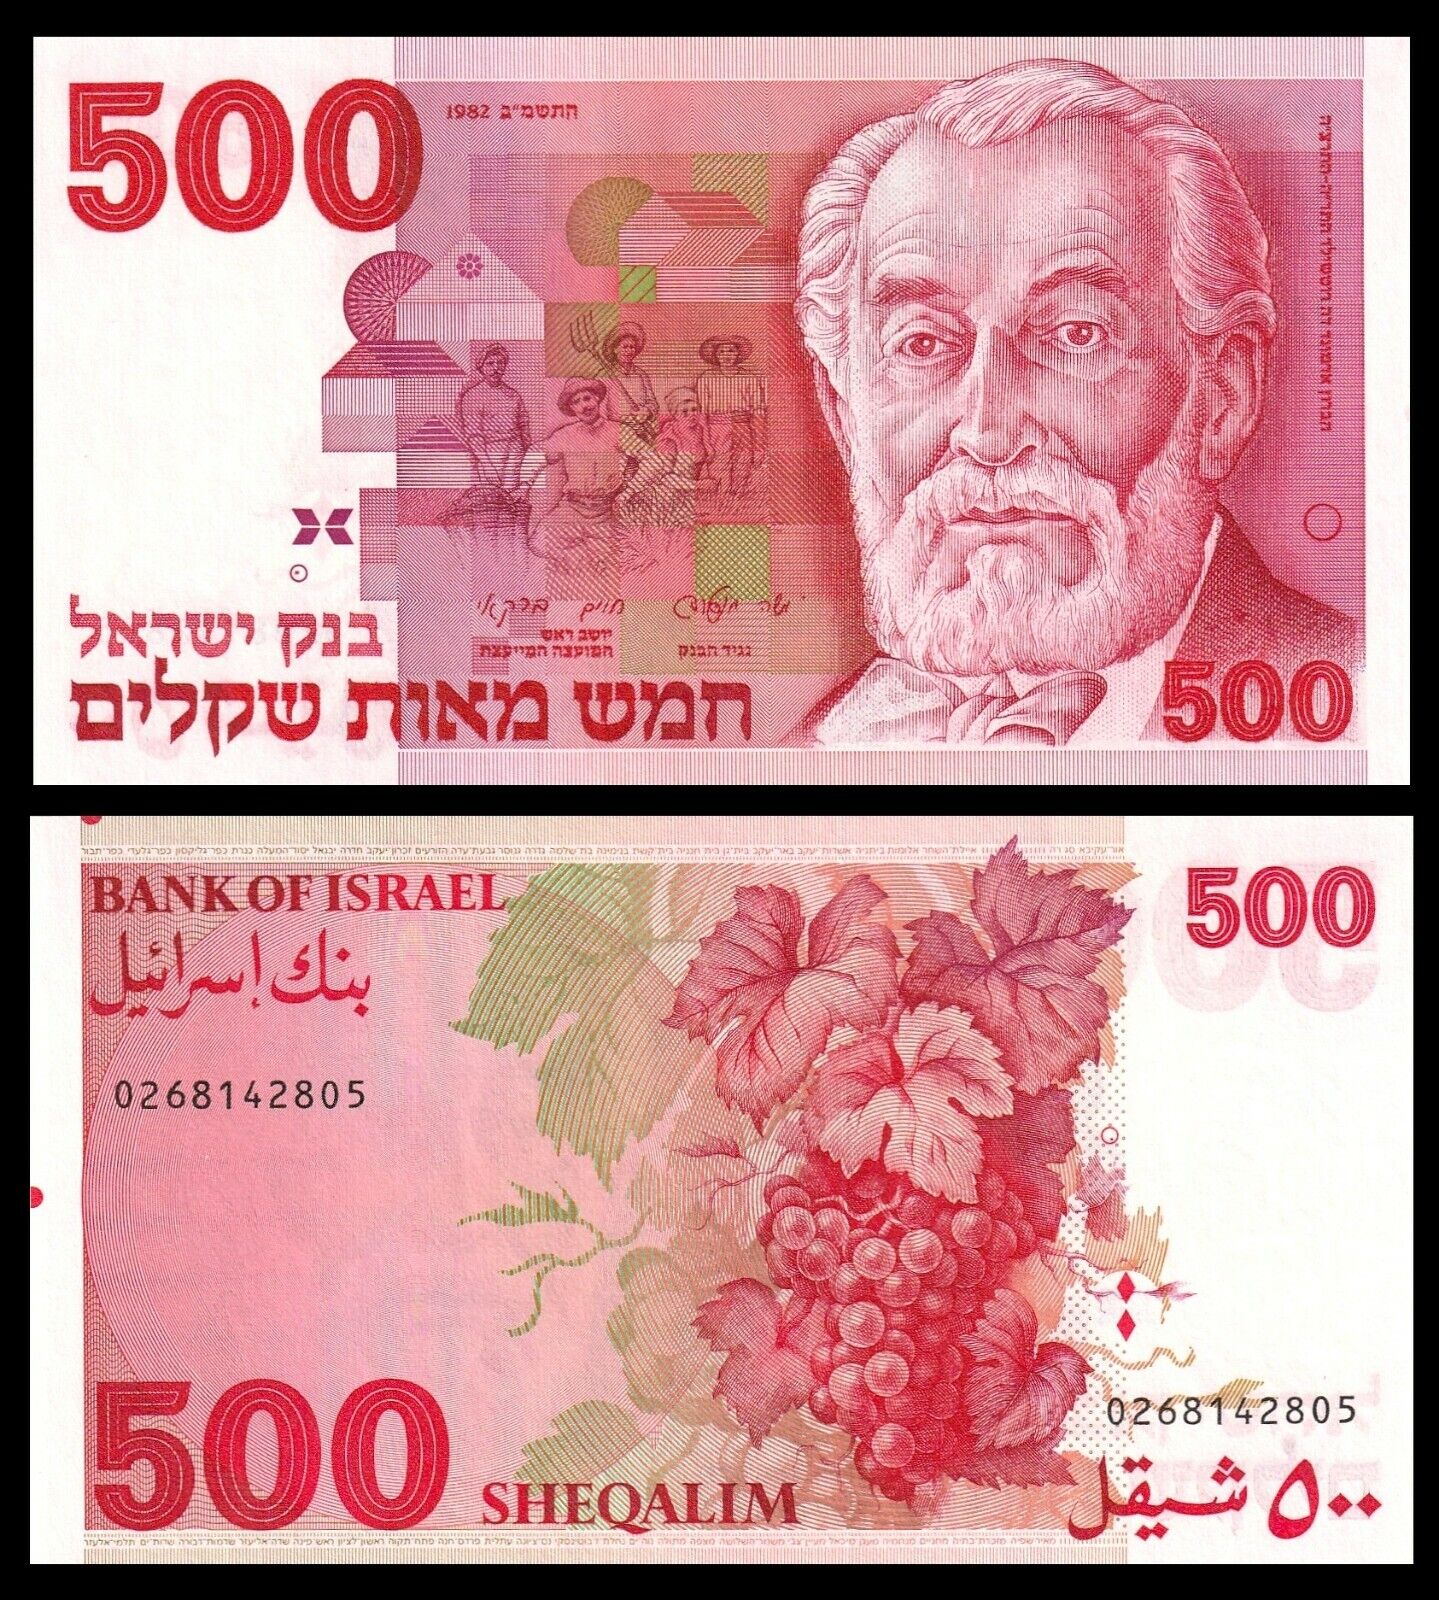 ???????? Israel 500 Sheqalim 1982 P List price Discount mail order de Edmond 48 Rothschild